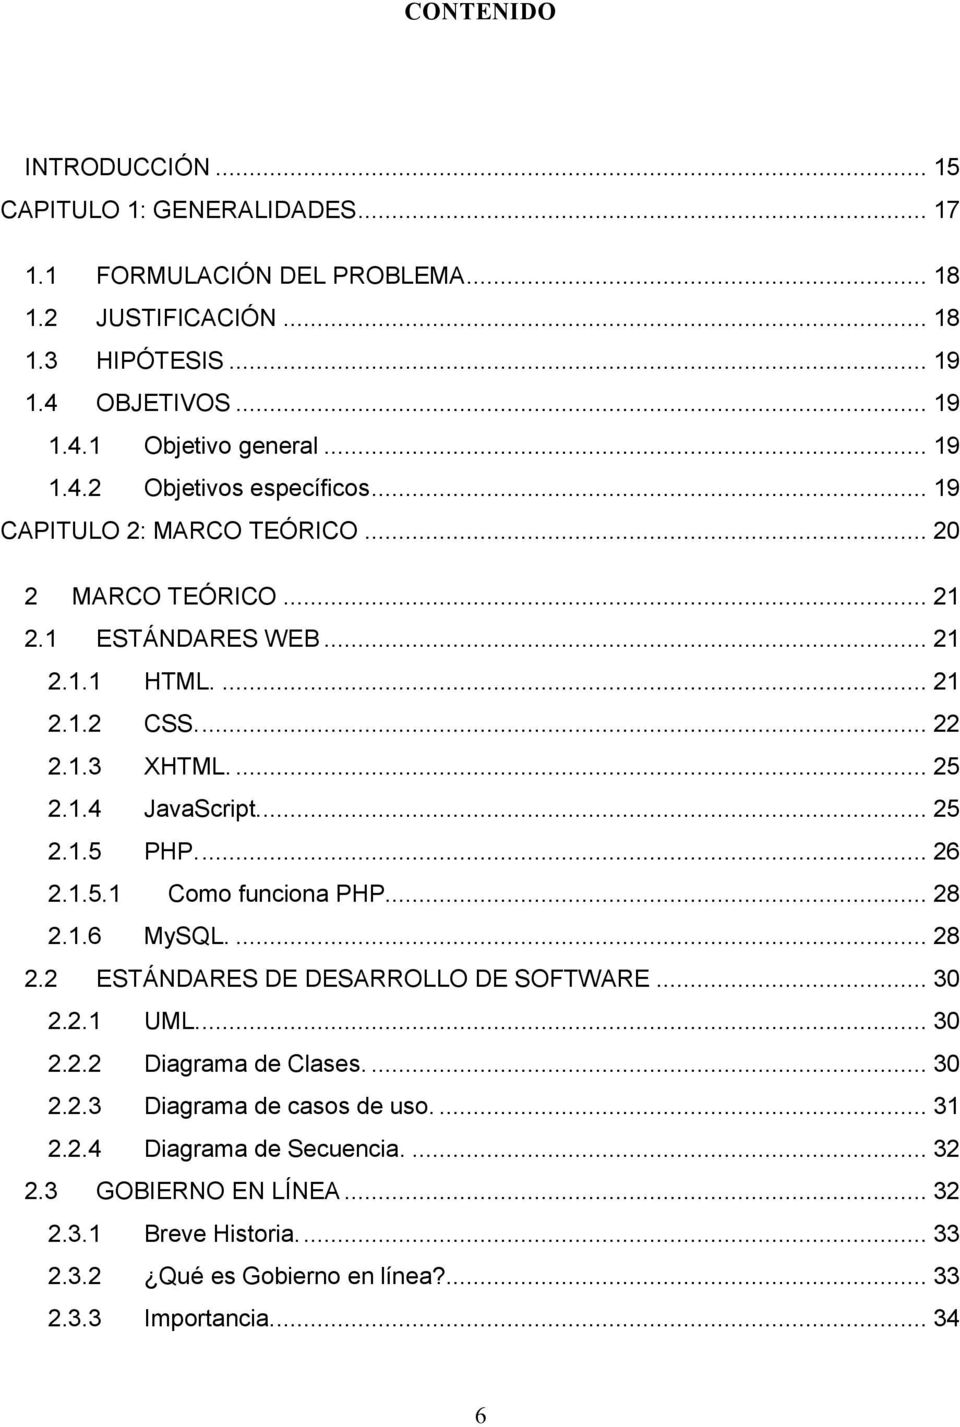 ... 25 2.1.5 PHP.... 26 2.1.5.1 Como funciona PHP.... 28 2.1.6 MySQL.... 28 2.2 ESTÁNDARES DE DESARROLLO DE SOFTWARE... 30 2.2.1 UML.... 30 2.2.2 Diagrama de Clases.... 30 2.2.3 Diagrama de casos de uso.